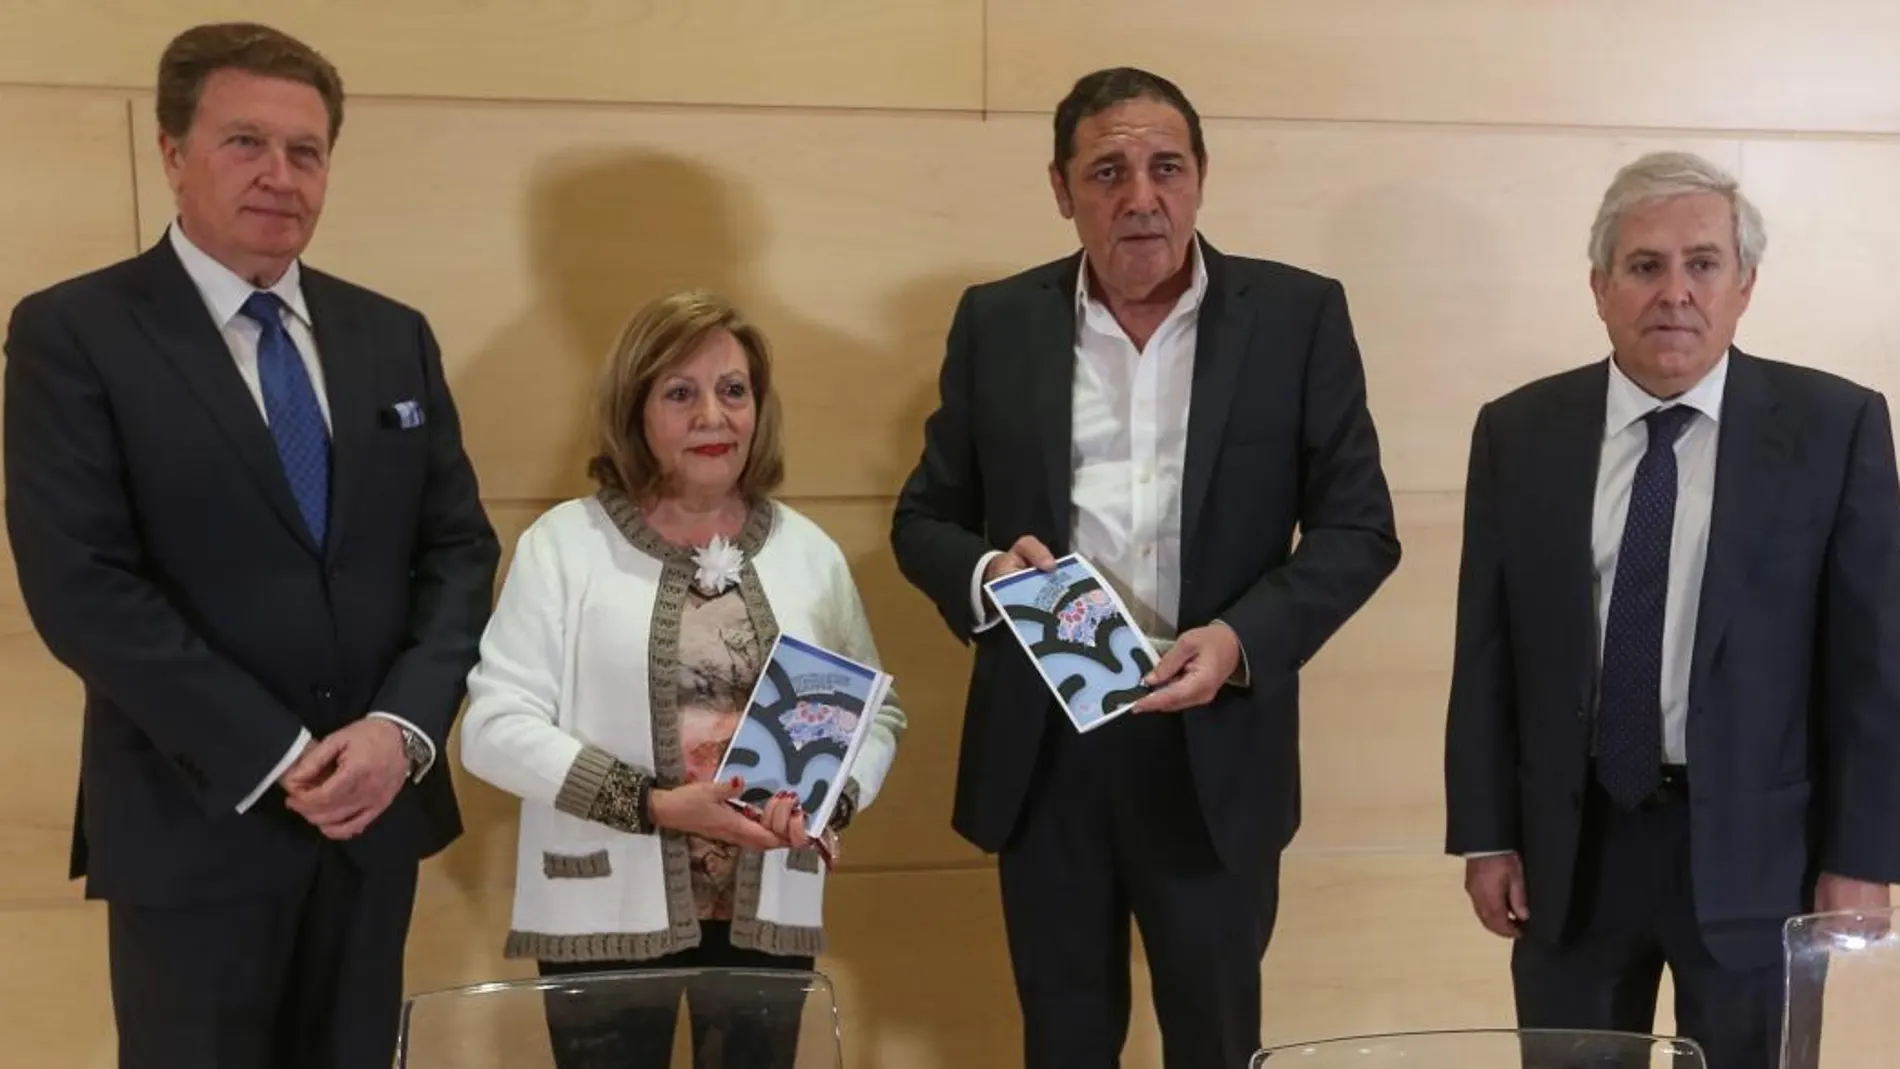 El consejero Antonio María Sáez Aguado presenta la guía junto a Manuel Fernández, Milagros Carvajal y Alfonso Montero / Dos Santos